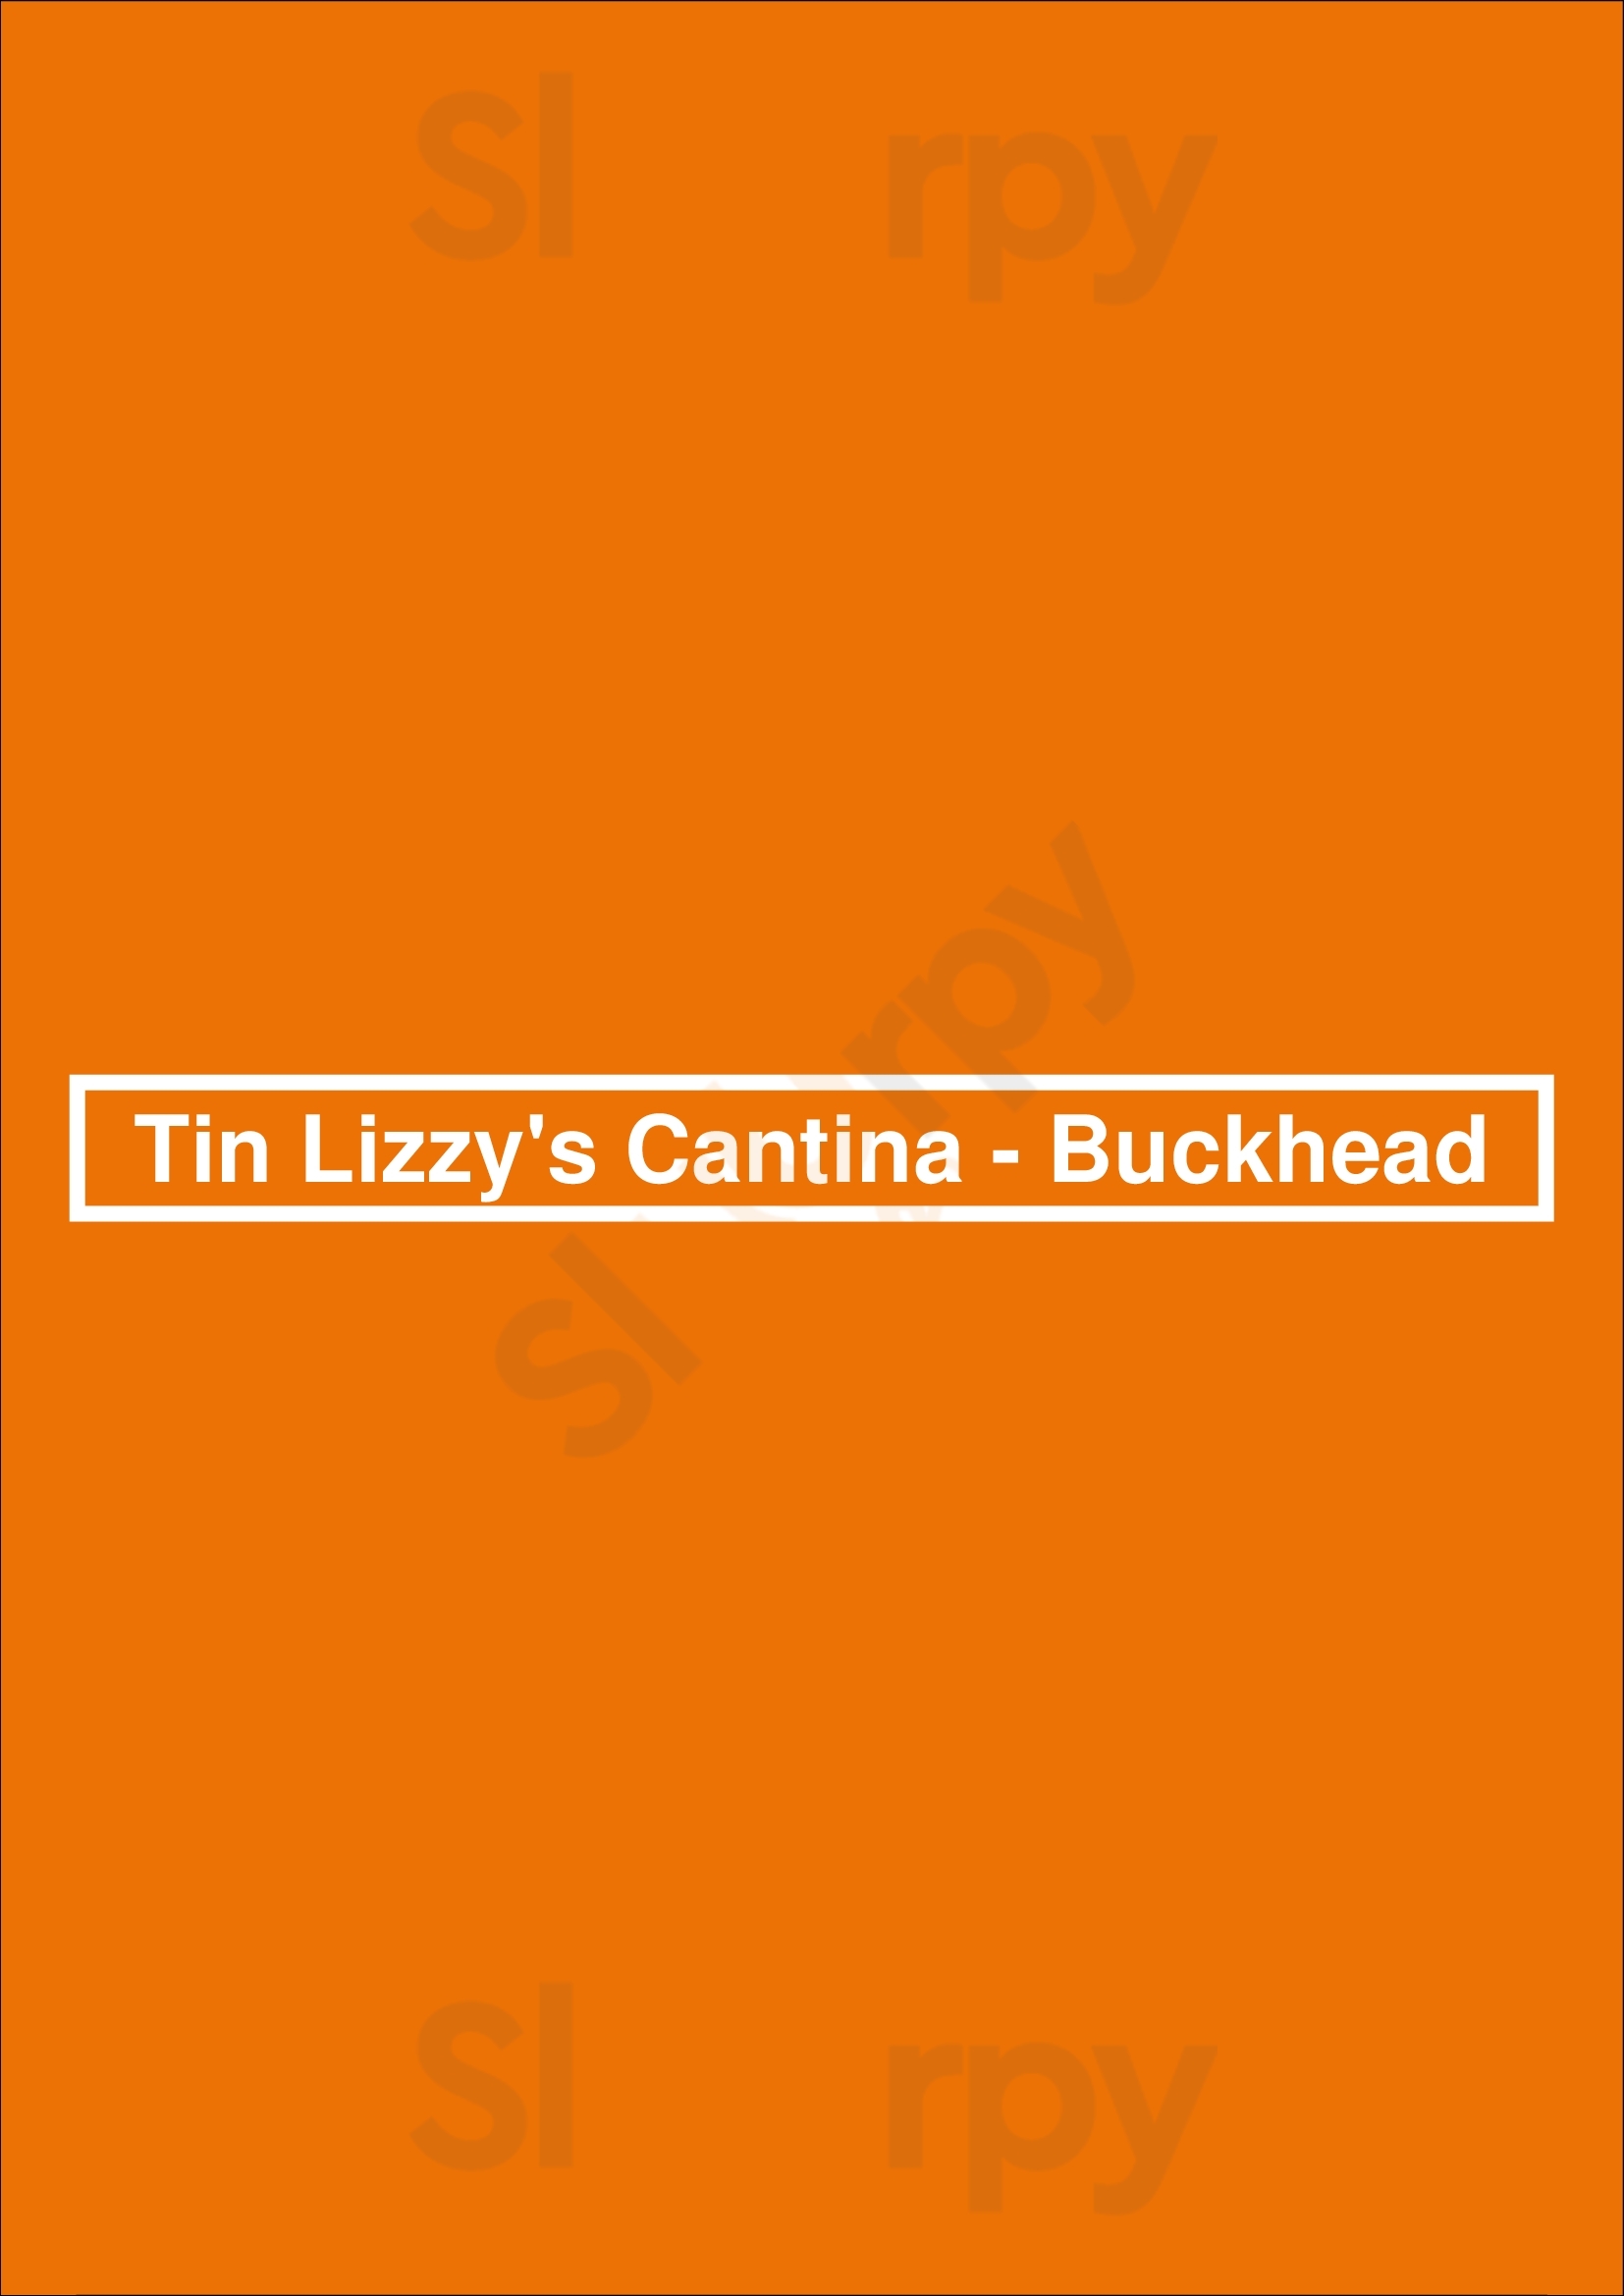 Tin Lizzy's Cantina Atlanta Menu - 1